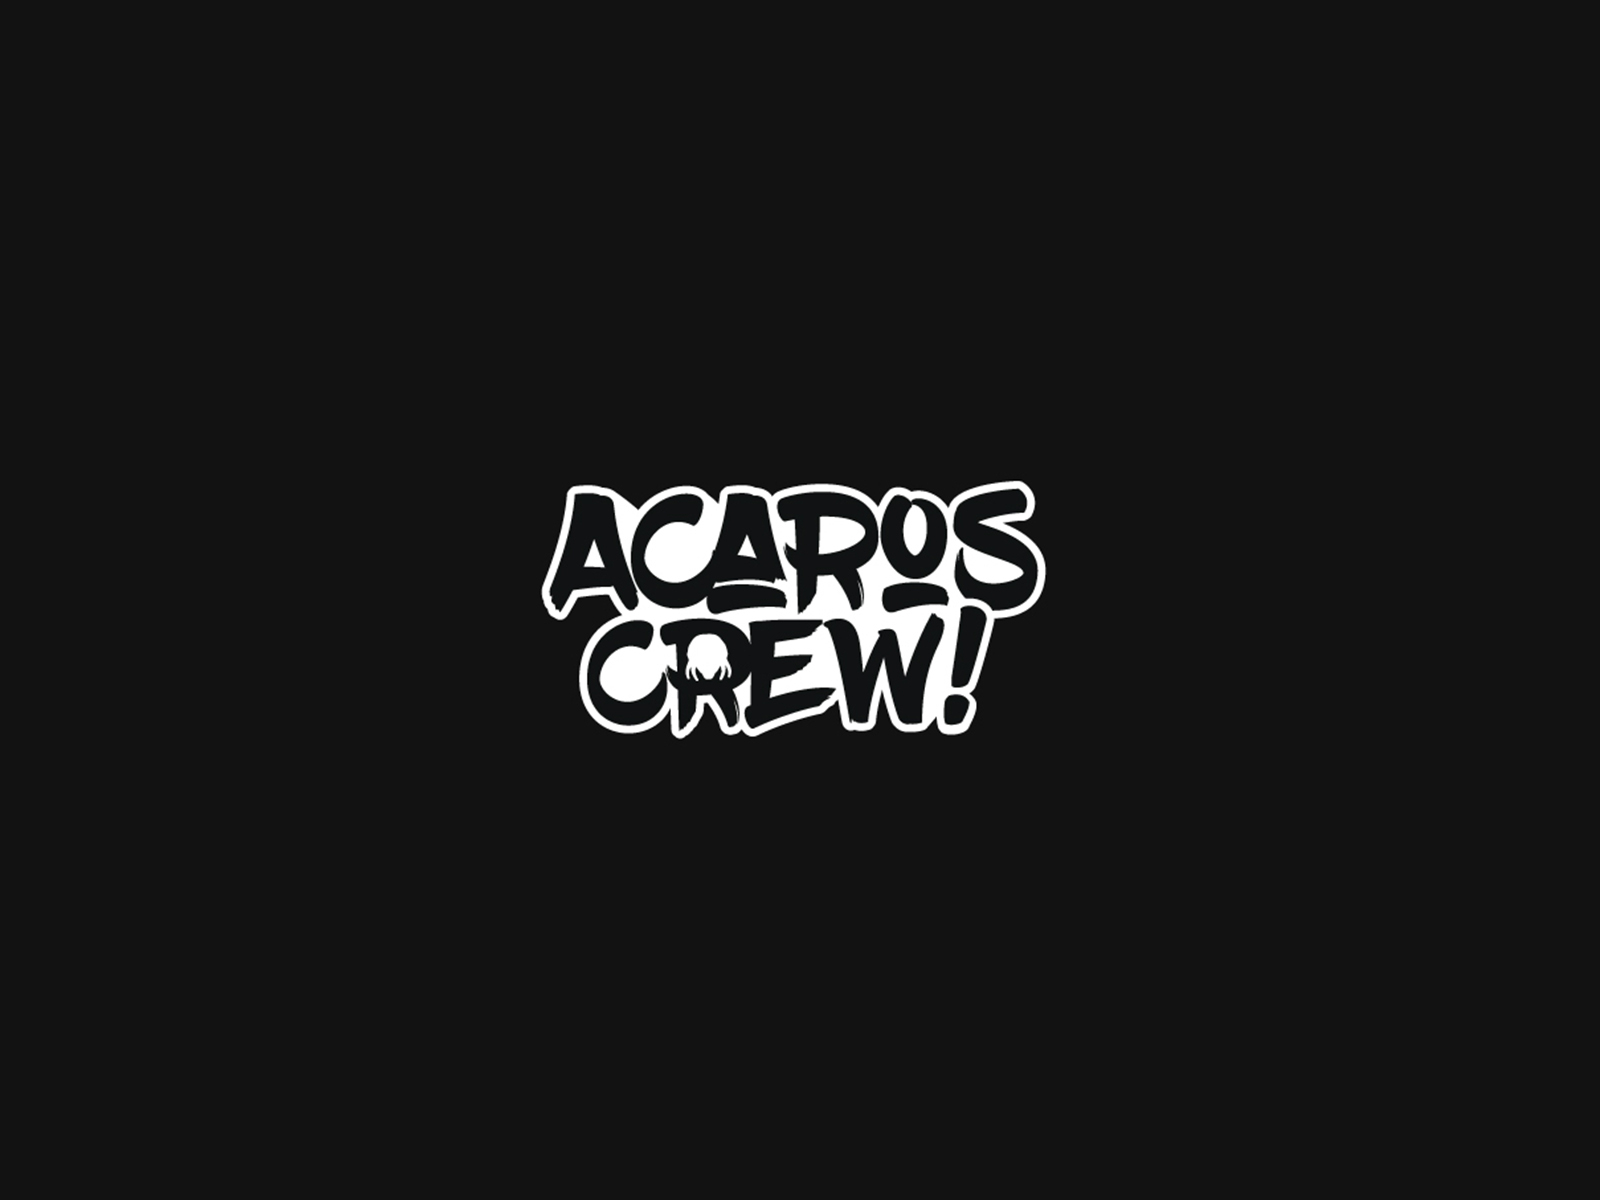 Acaros Crew By Antonio Altamirano On Dribbble